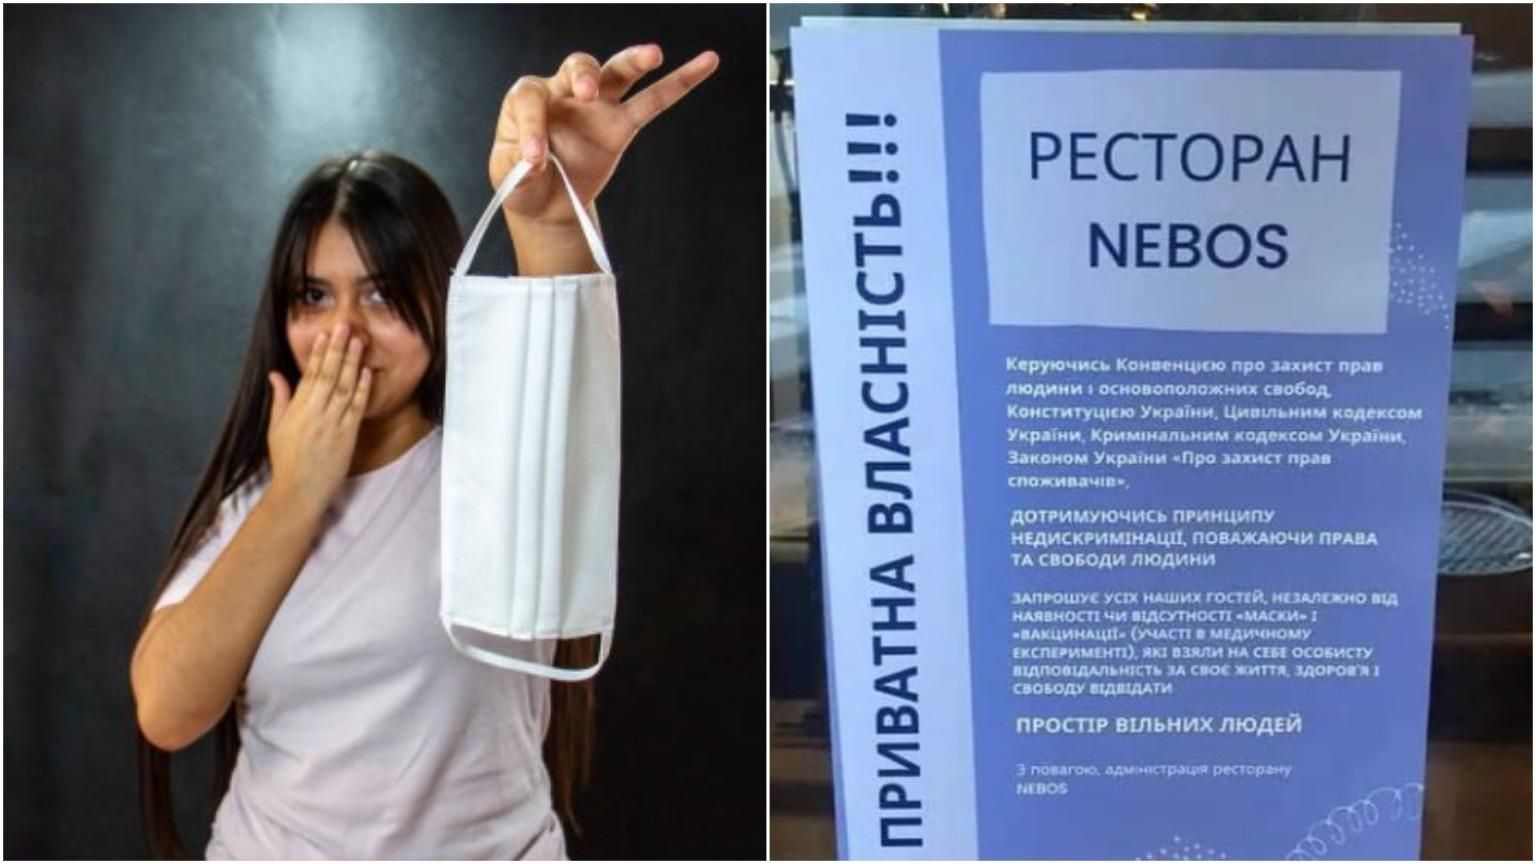 Без вакцинації та навіть маски: у Києві антивакцинаторське кафе запрошує "вільних людей" - Україна новини - 24 Канал